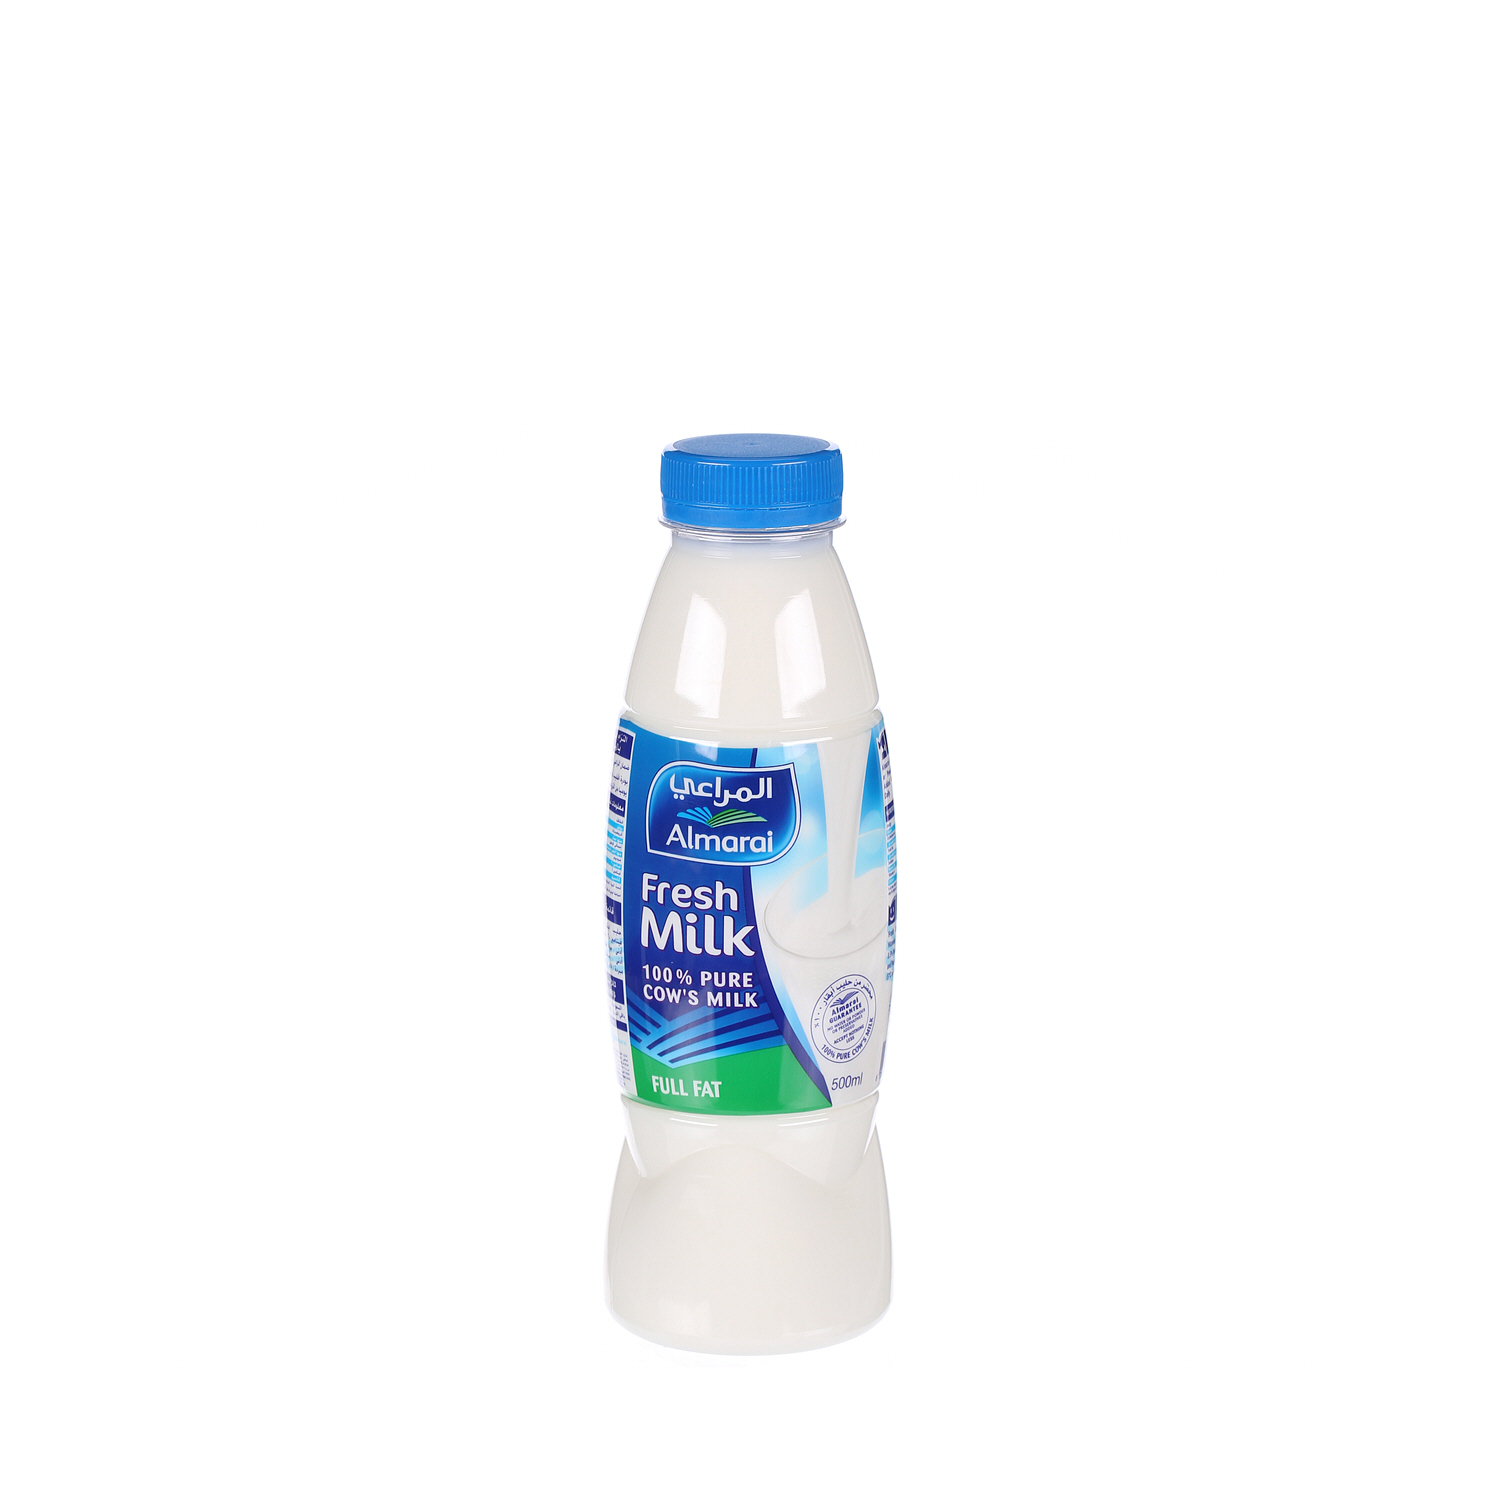 Almarai Fresh Milk Full Fat 500ml